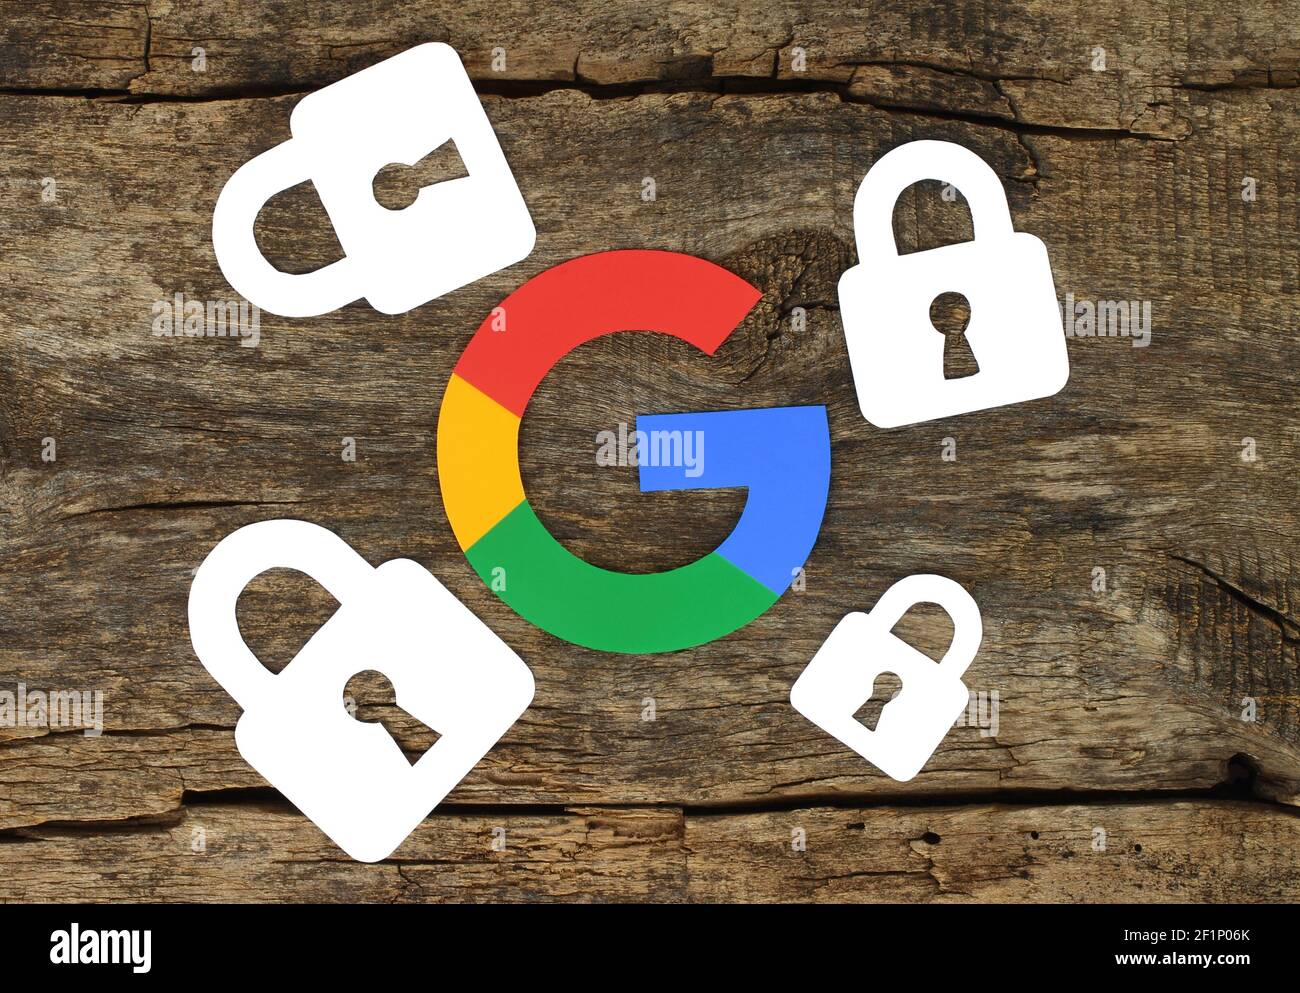 Kiev, Ukraine - 19 février 2021: Concept de sécurité avec icône Google et serrures imprimées sur papier et placées sur fond en bois ancien. Sécurité Google a Banque D'Images